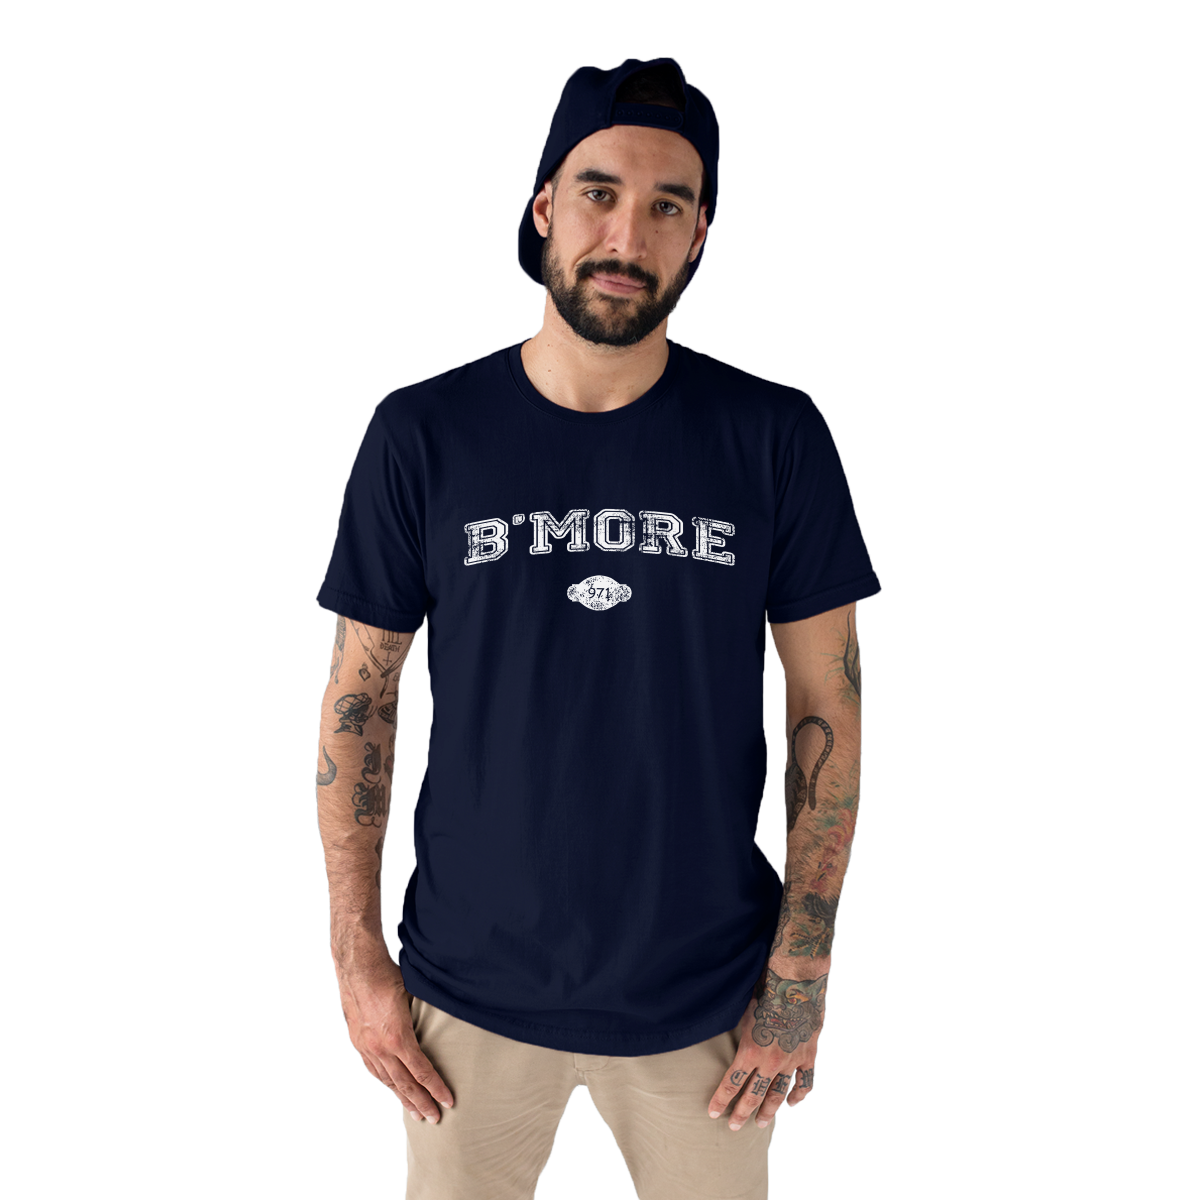 B'more 1729 Represent Men's T-shirt | Navy